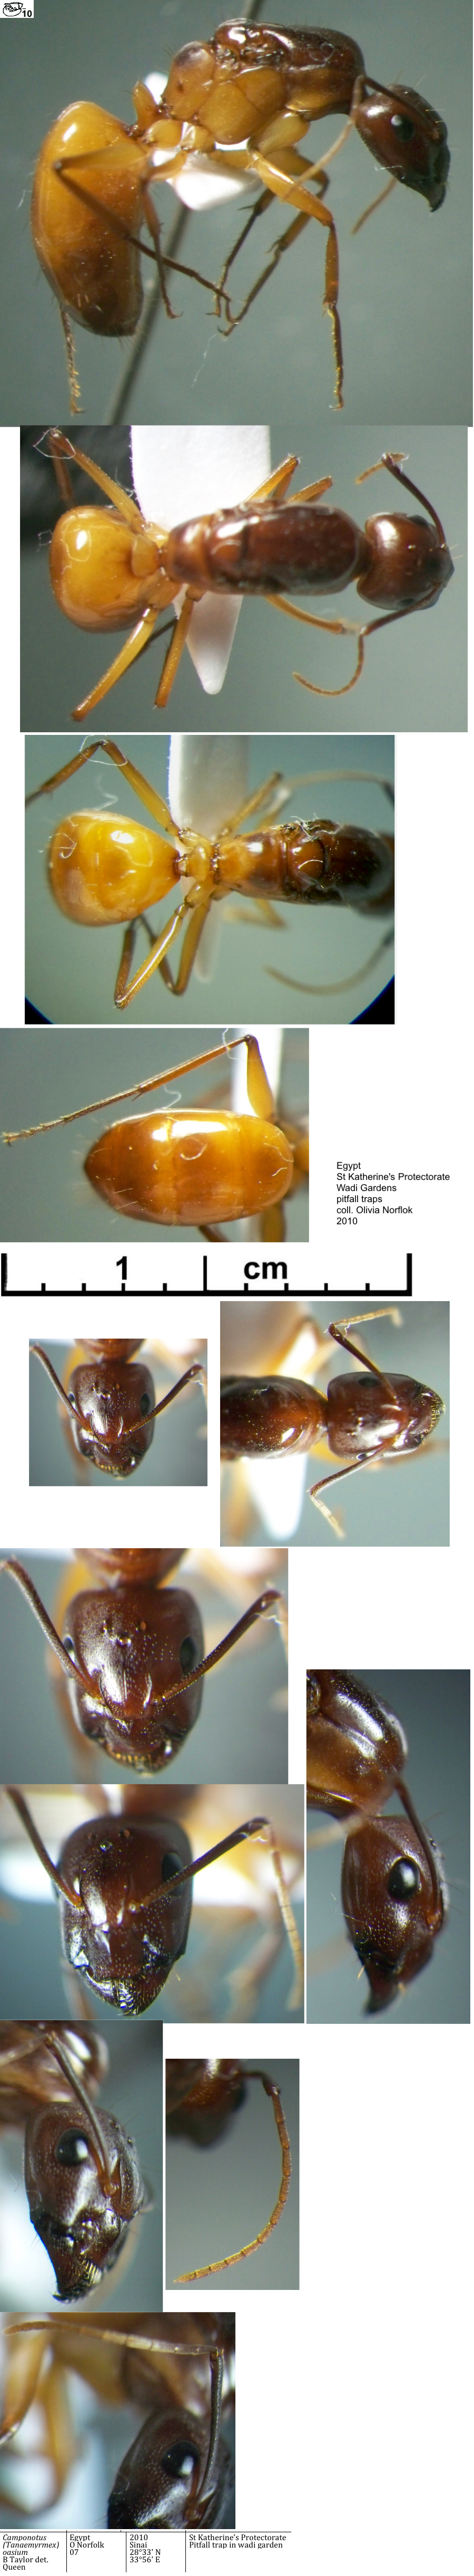 {Camponotus (Tanaemyrmex) oasium queen}